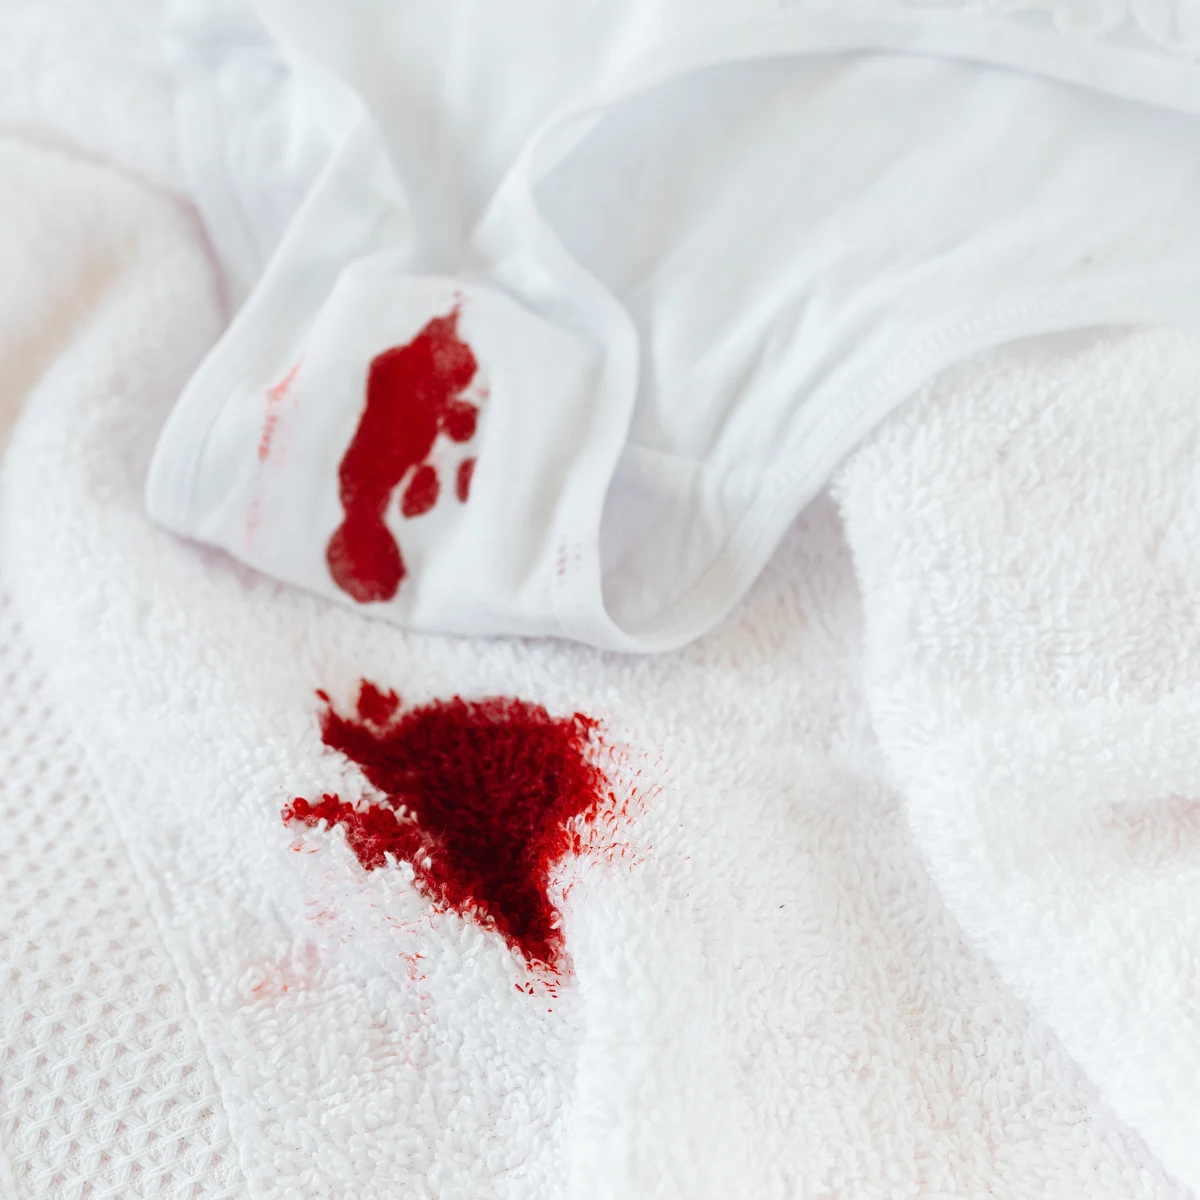 Grapa harina póngase en fila Cómo quitar las manchas de sangre de la ropa